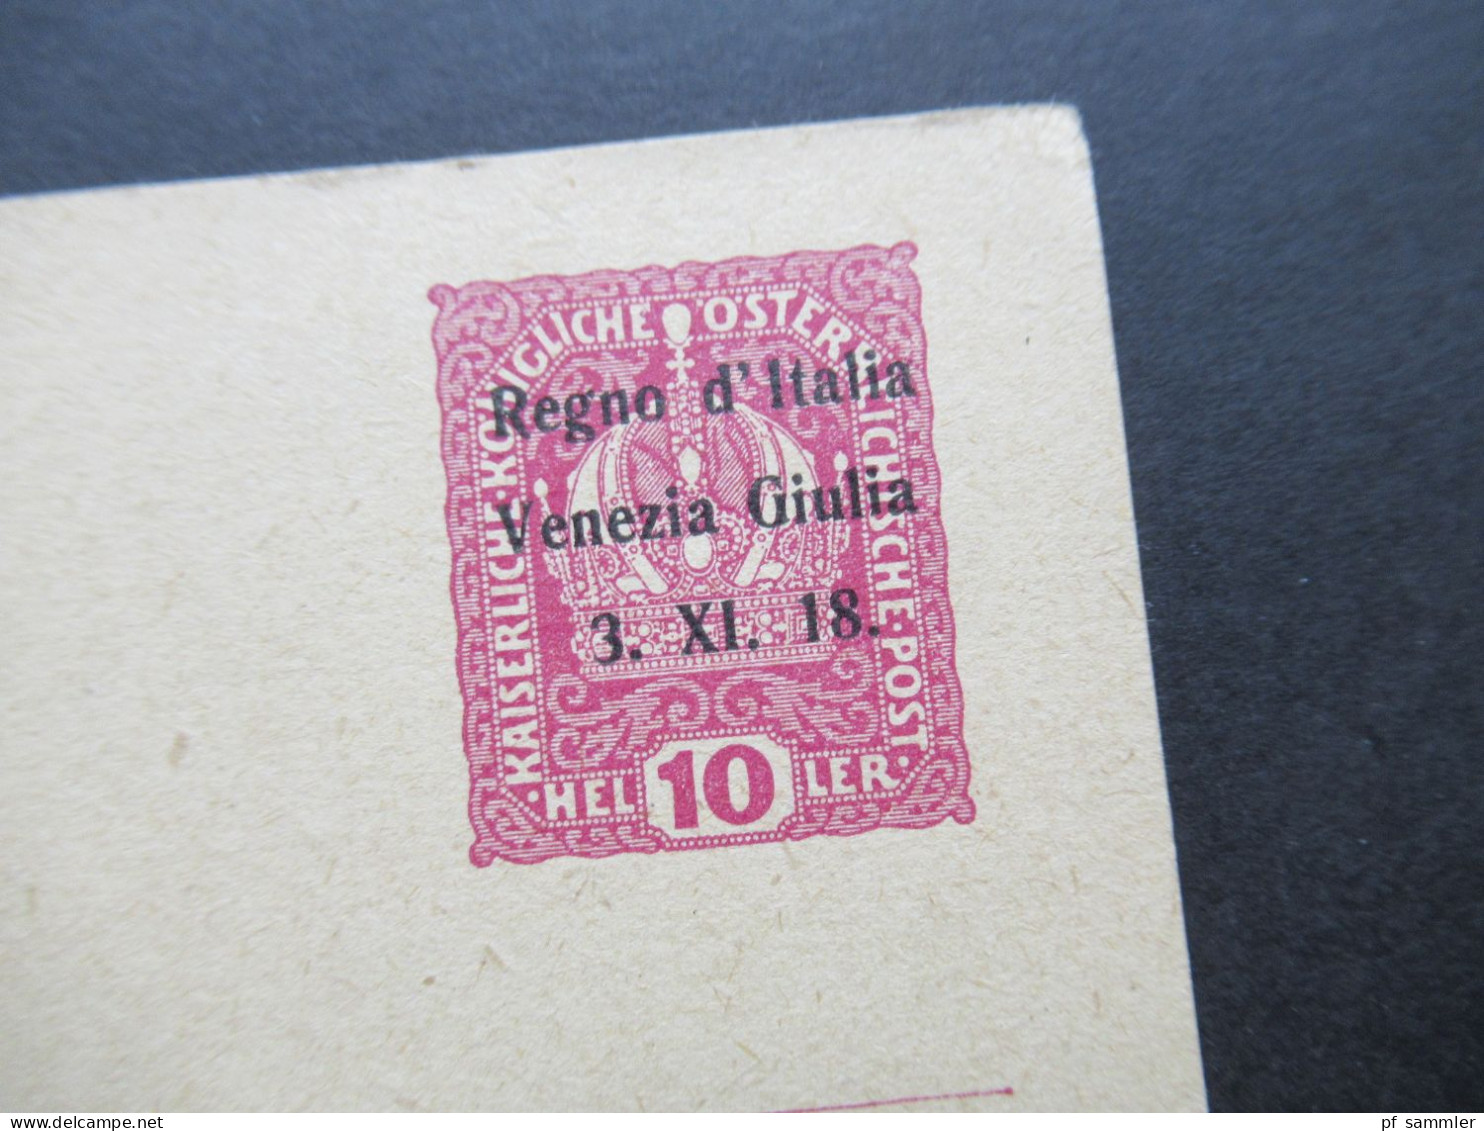 Italien 1918 Österreichische Postkarte Kaiserkrone Mit Aufdruck Regno D'Italia Venezia Giulia / Julisch Venetien - Europa- Und Asienämter